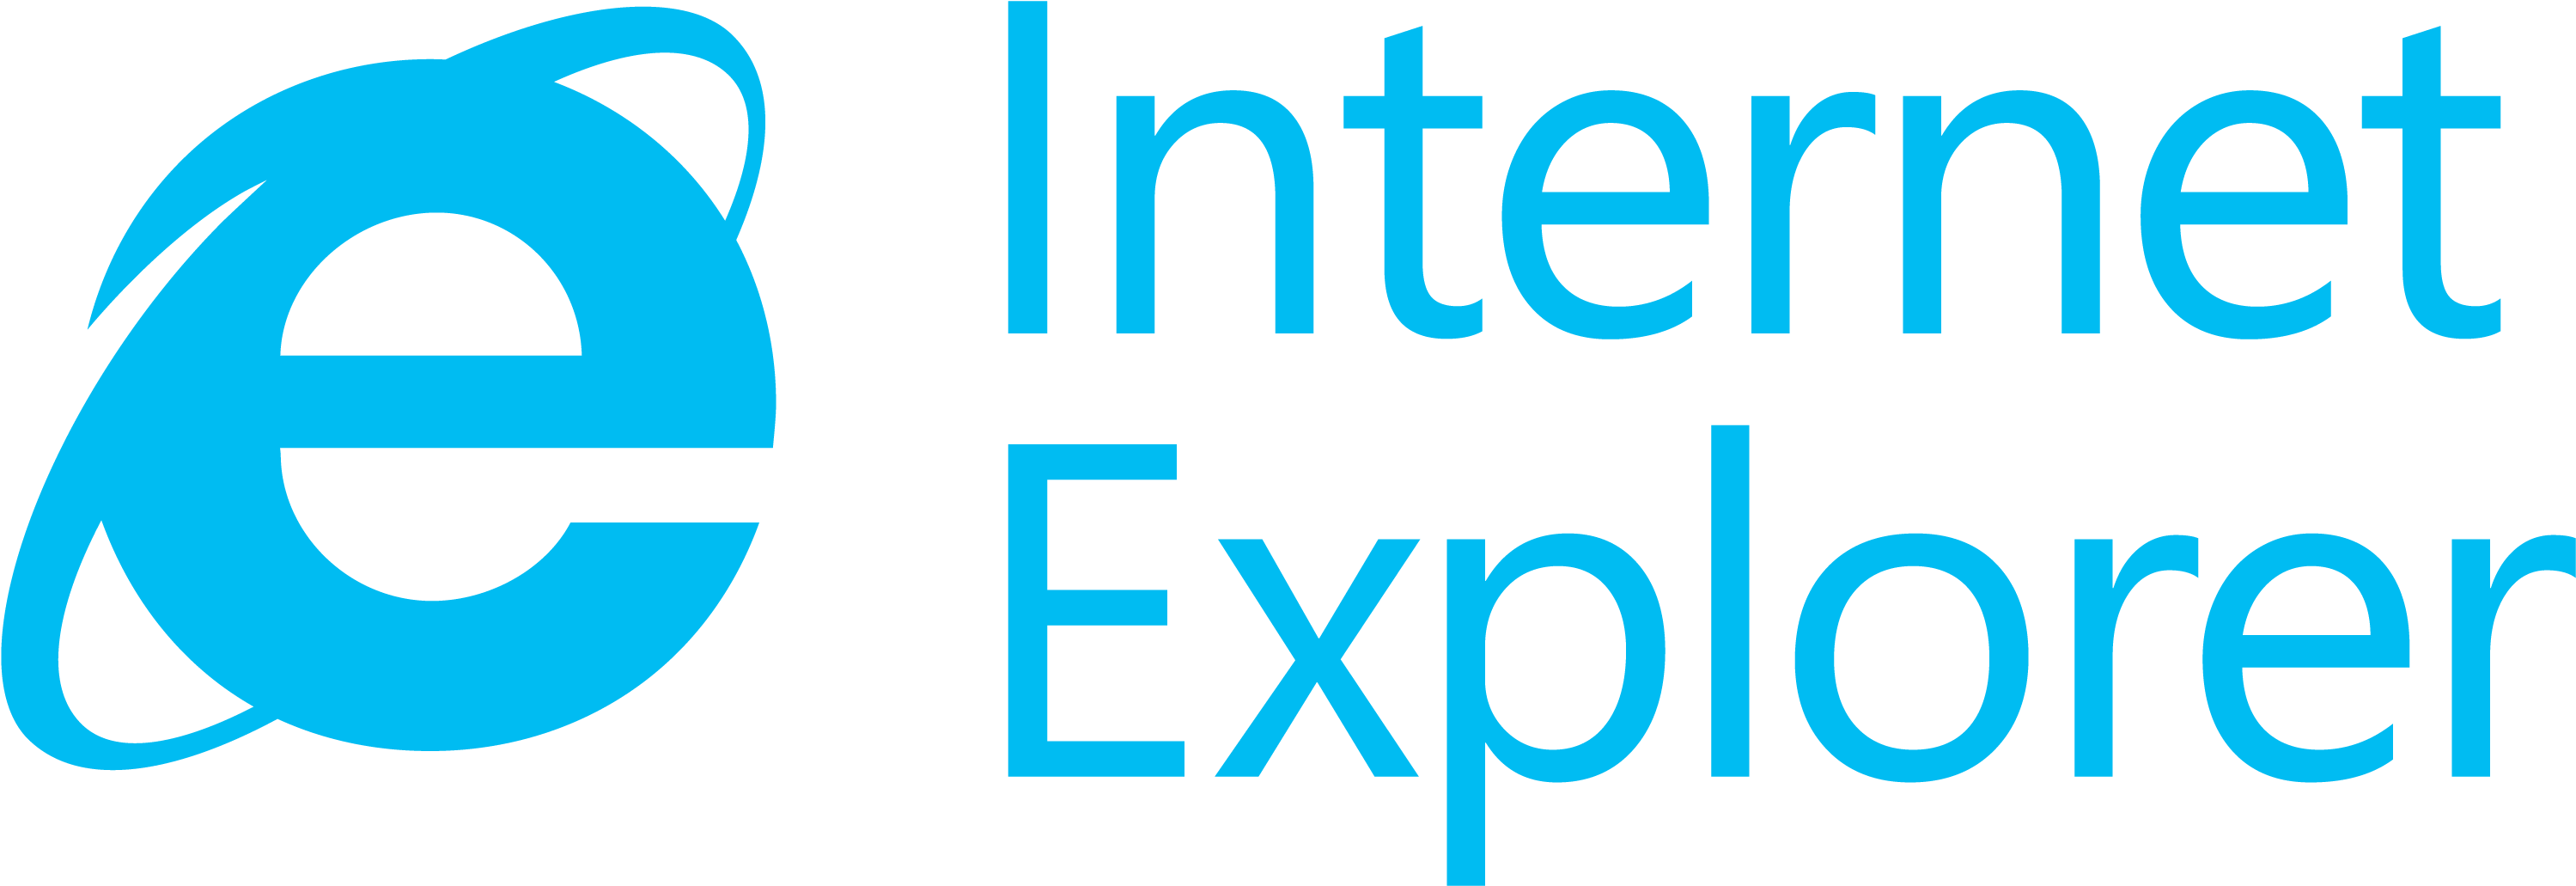 Internet Explorer Logo And Wordmark - Microsoft Internet Explorer Png (2272x1704), Png Download